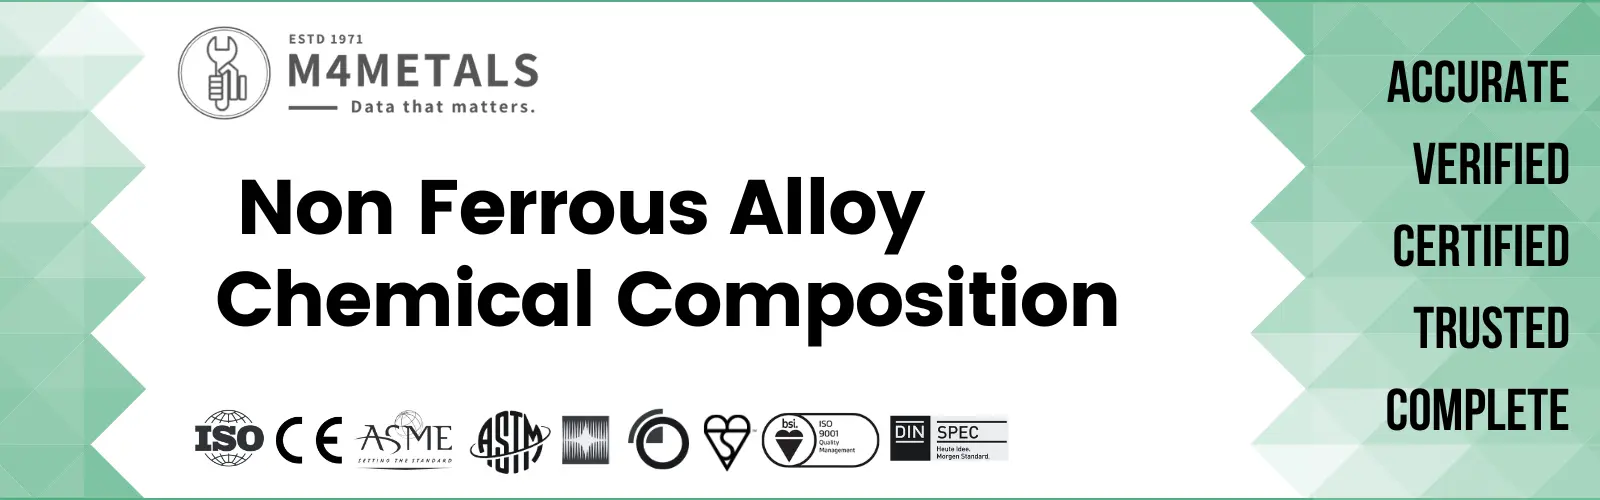 Non Ferrous Alloy Chemical Composition